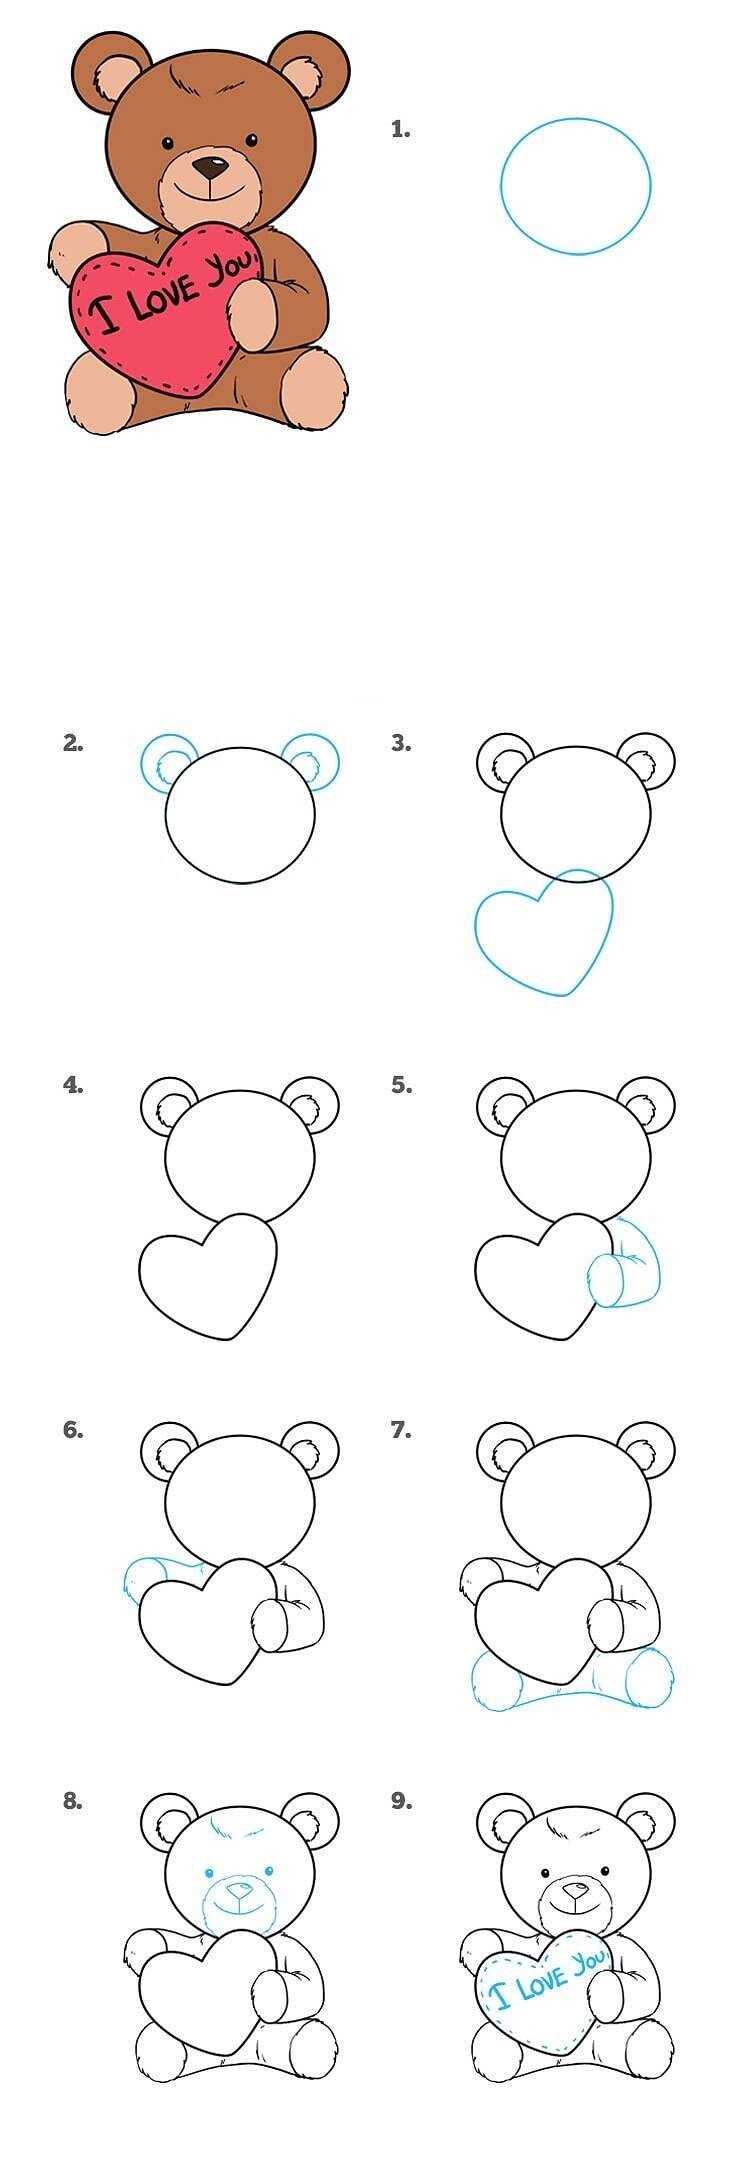 Как нарисовать плюшевого мишку с сердцем в руках поэтапно